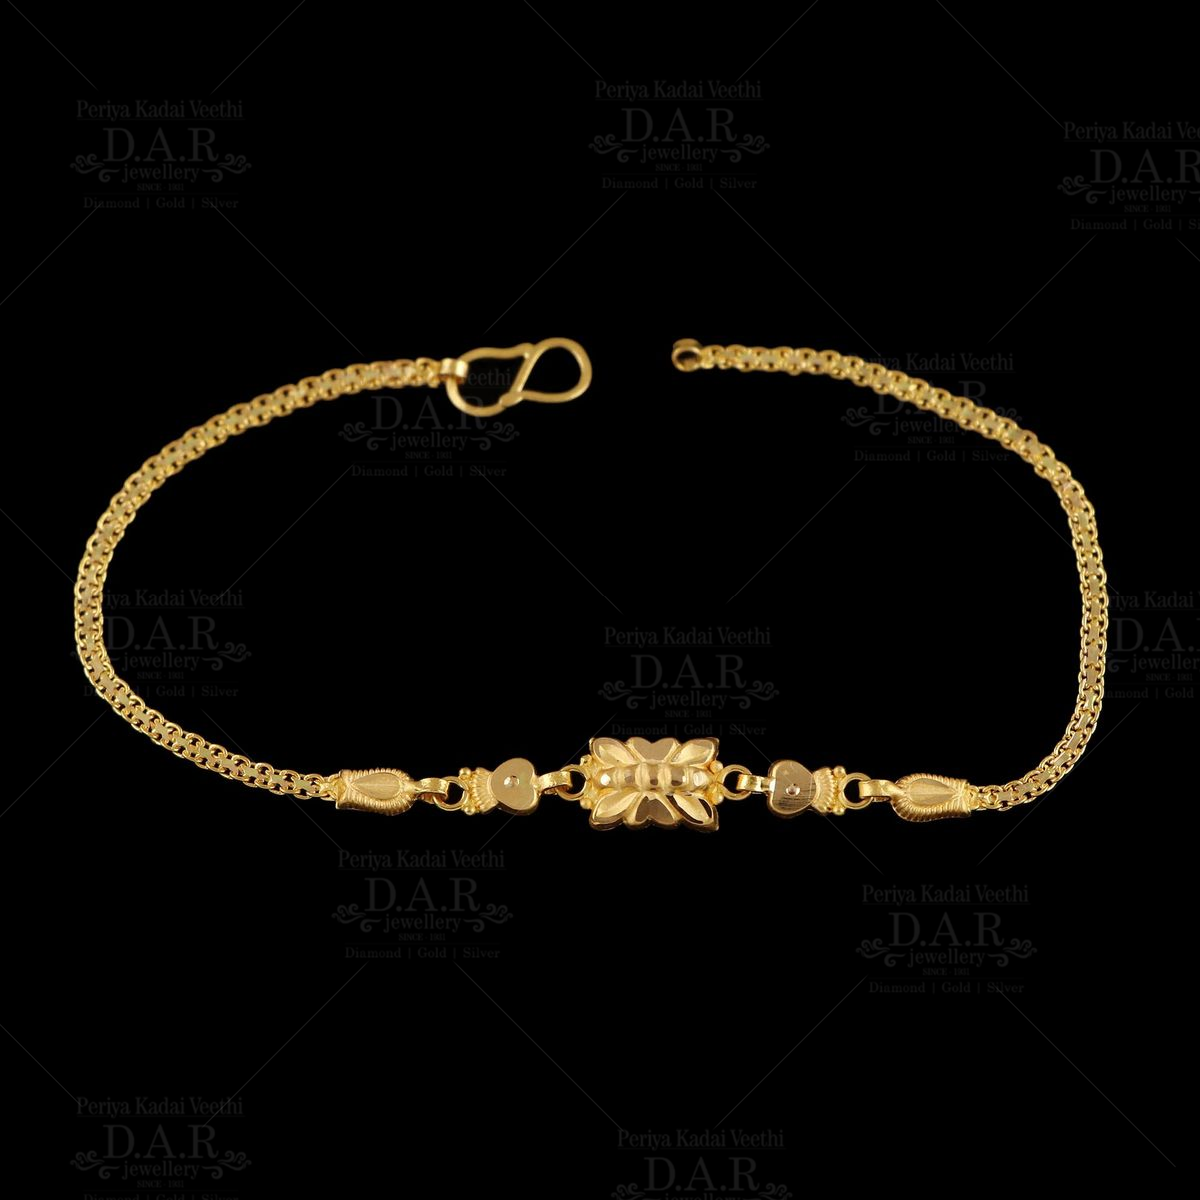 1 Gram Gold Plated 2 Line Pokal Artisanal Design Bracelet For Men - Style  C385 at Rs 4250.00 | Rajkot| ID: 2849769867562